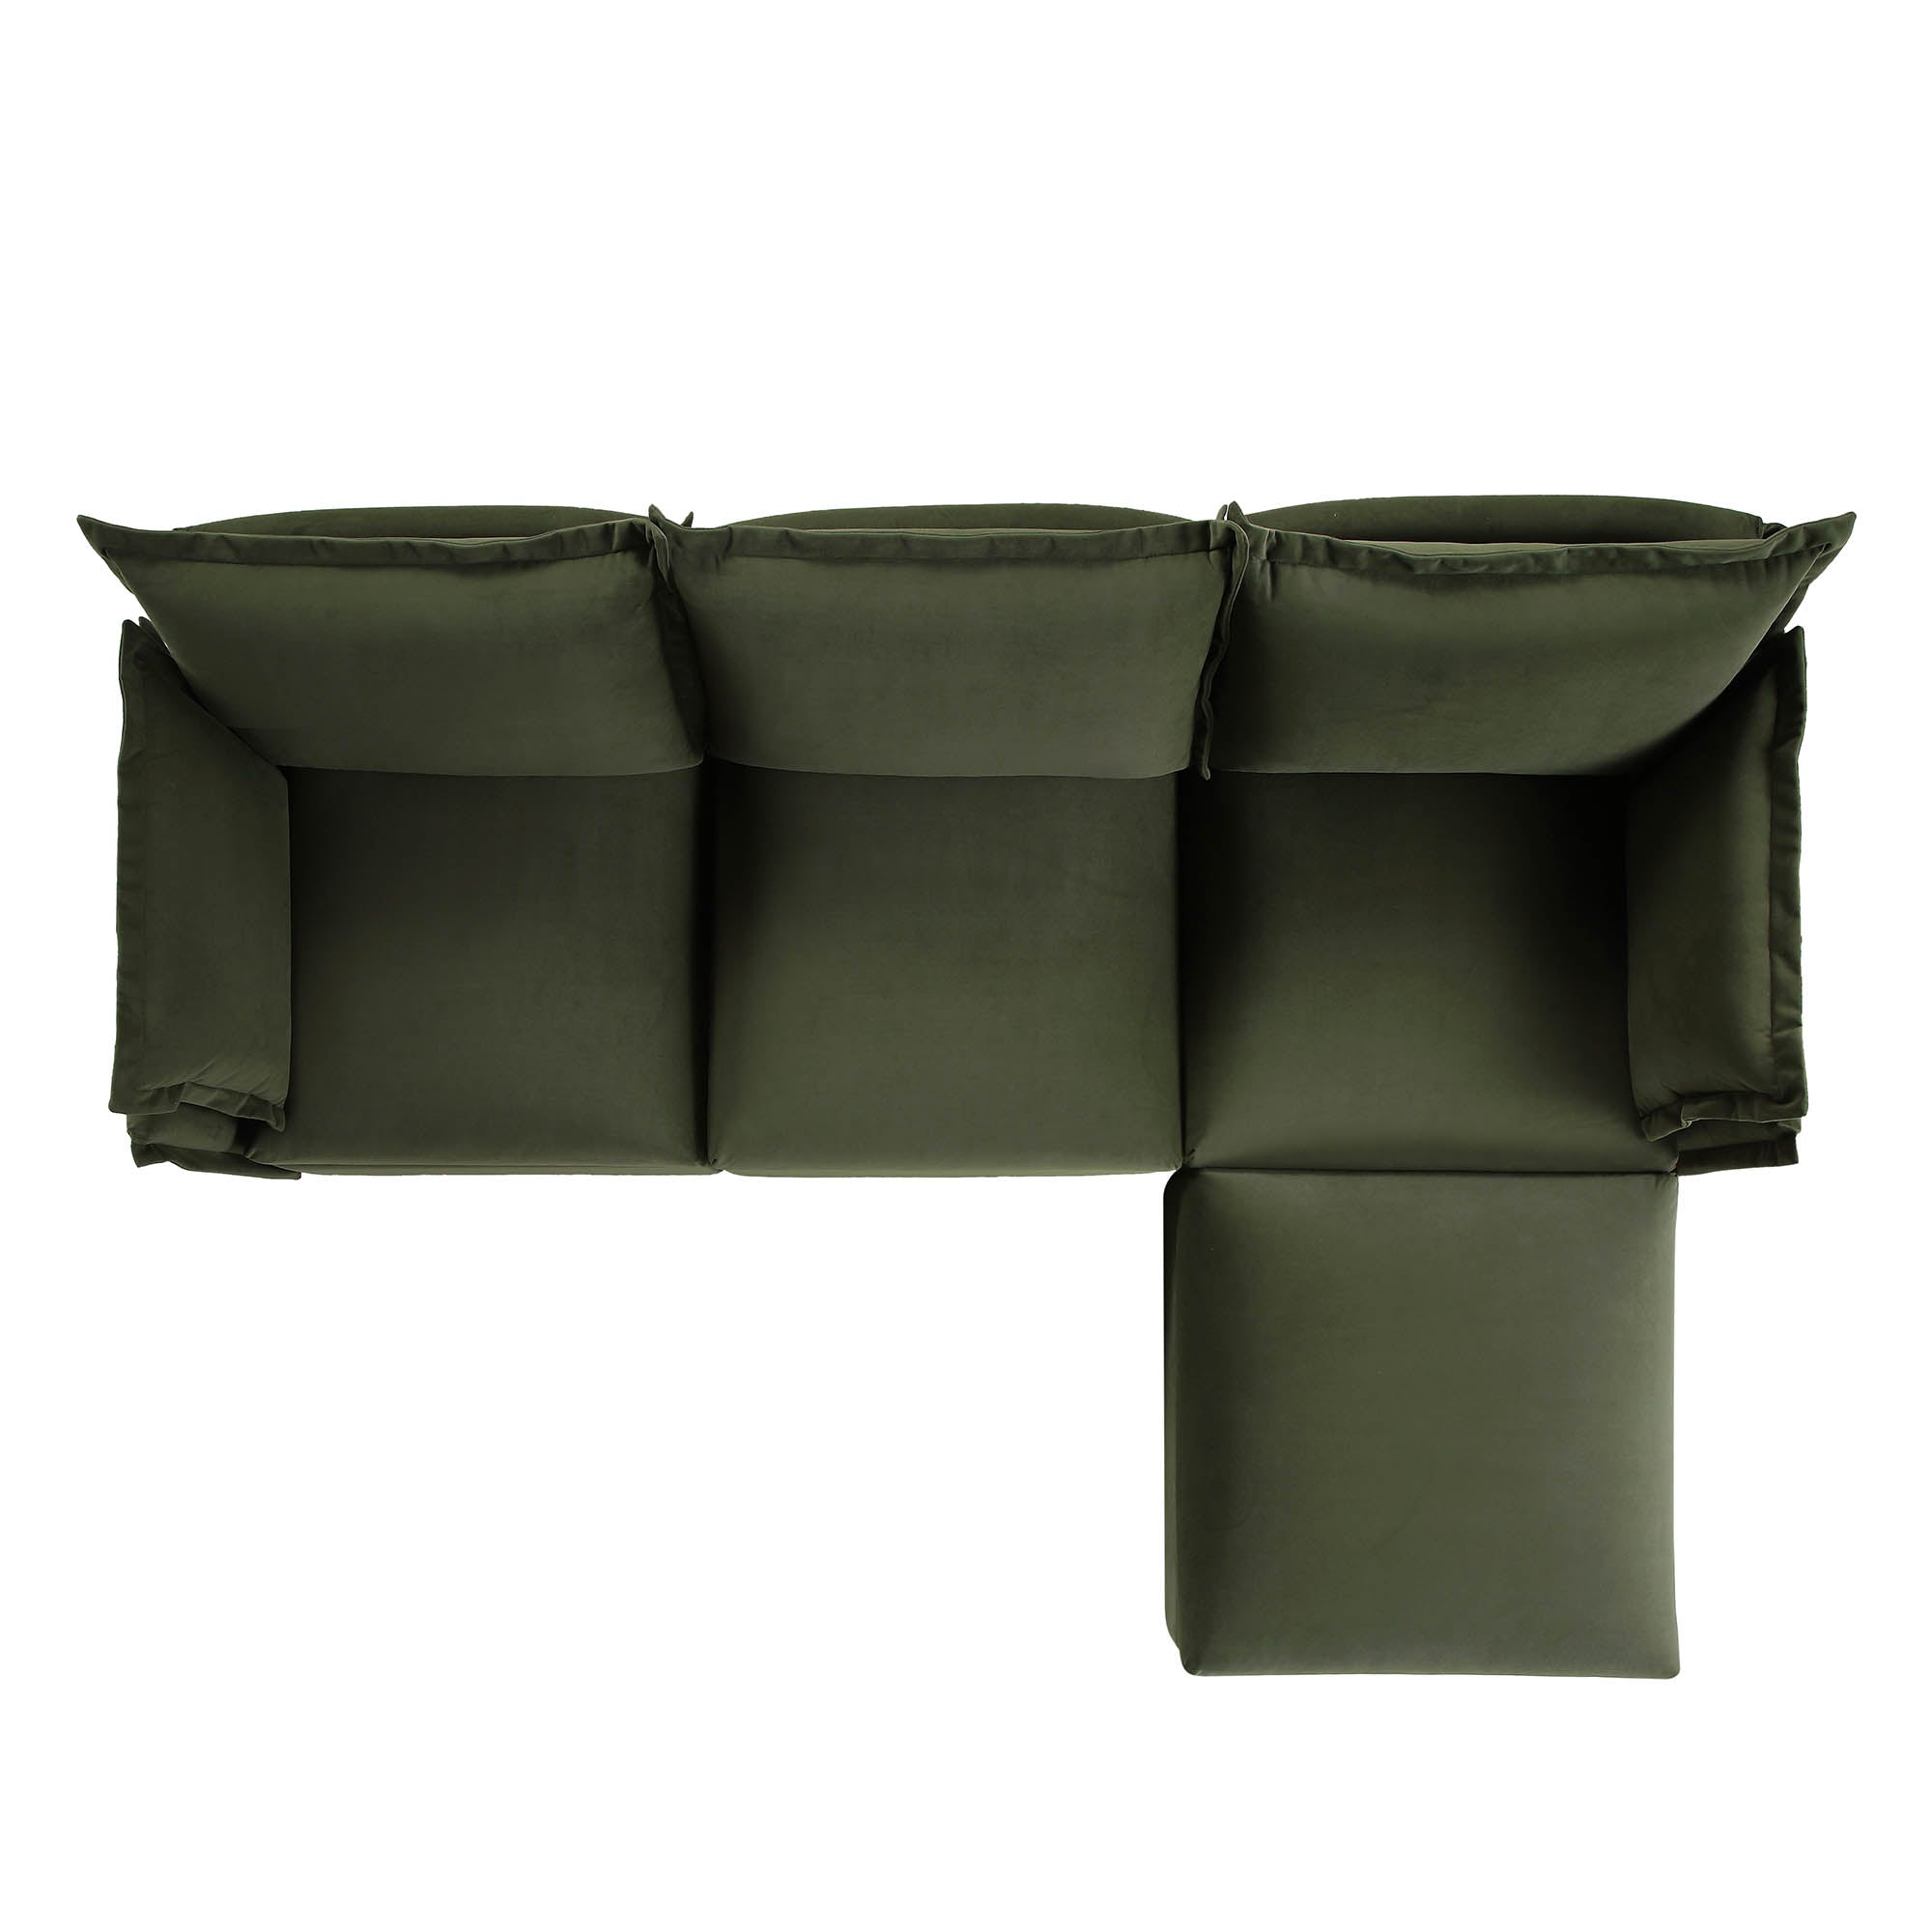 Byron Pillow Edge Moss Green Velvet Modular Sofa, 3-Seater Chaise